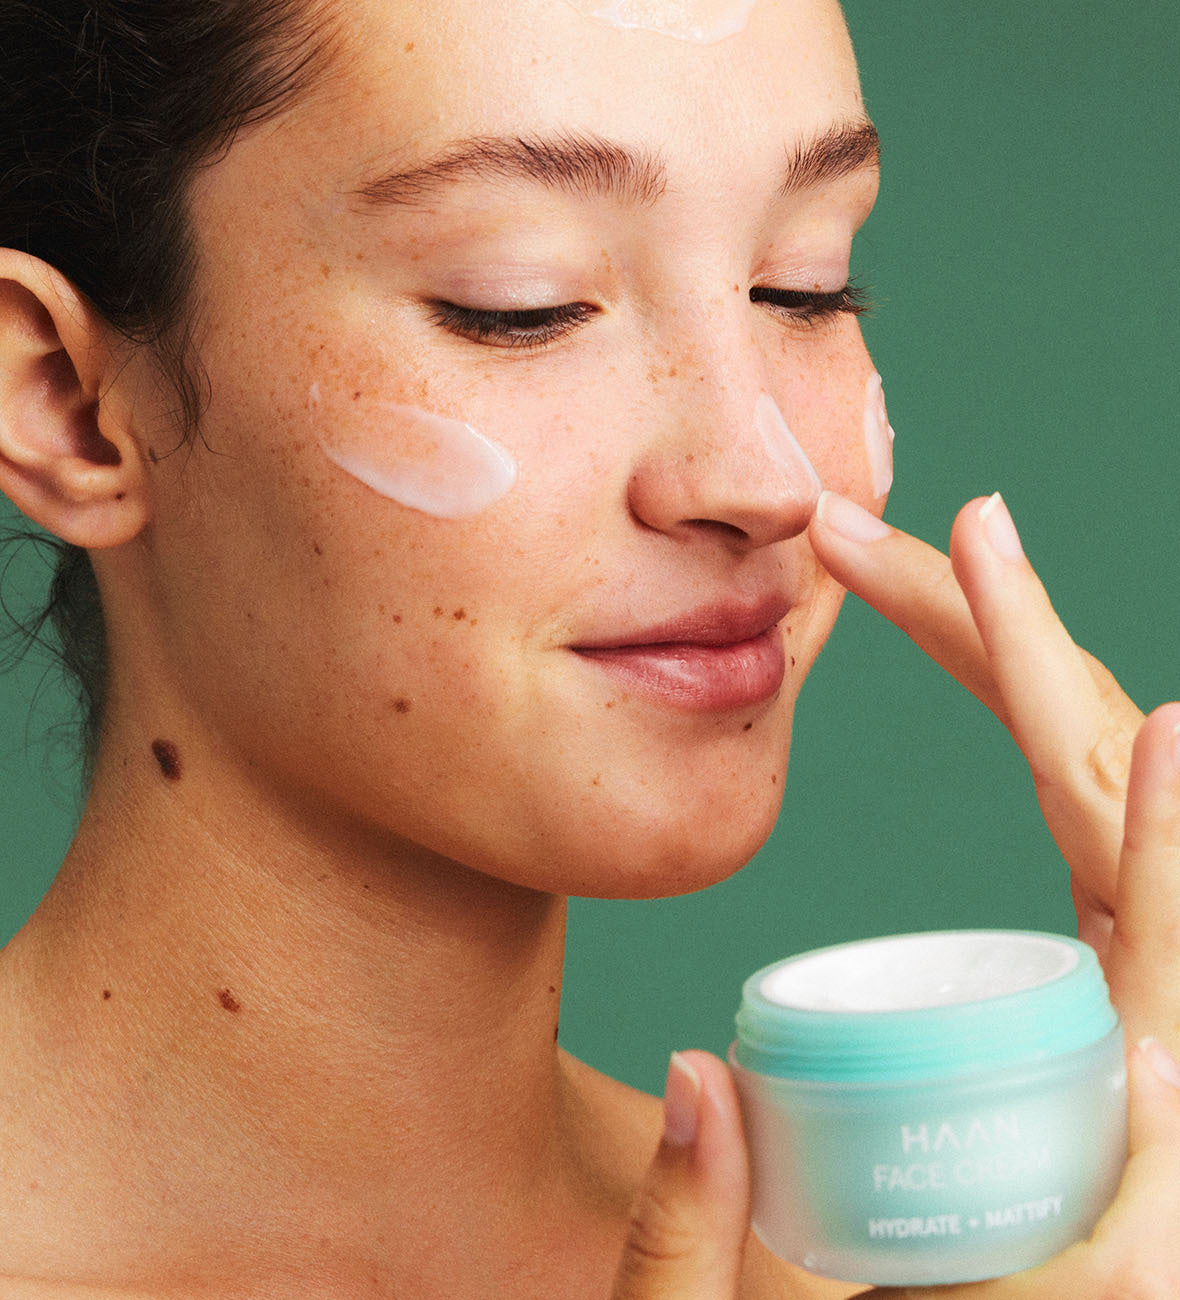 Niacinamide Face Cream - for Oily Skin